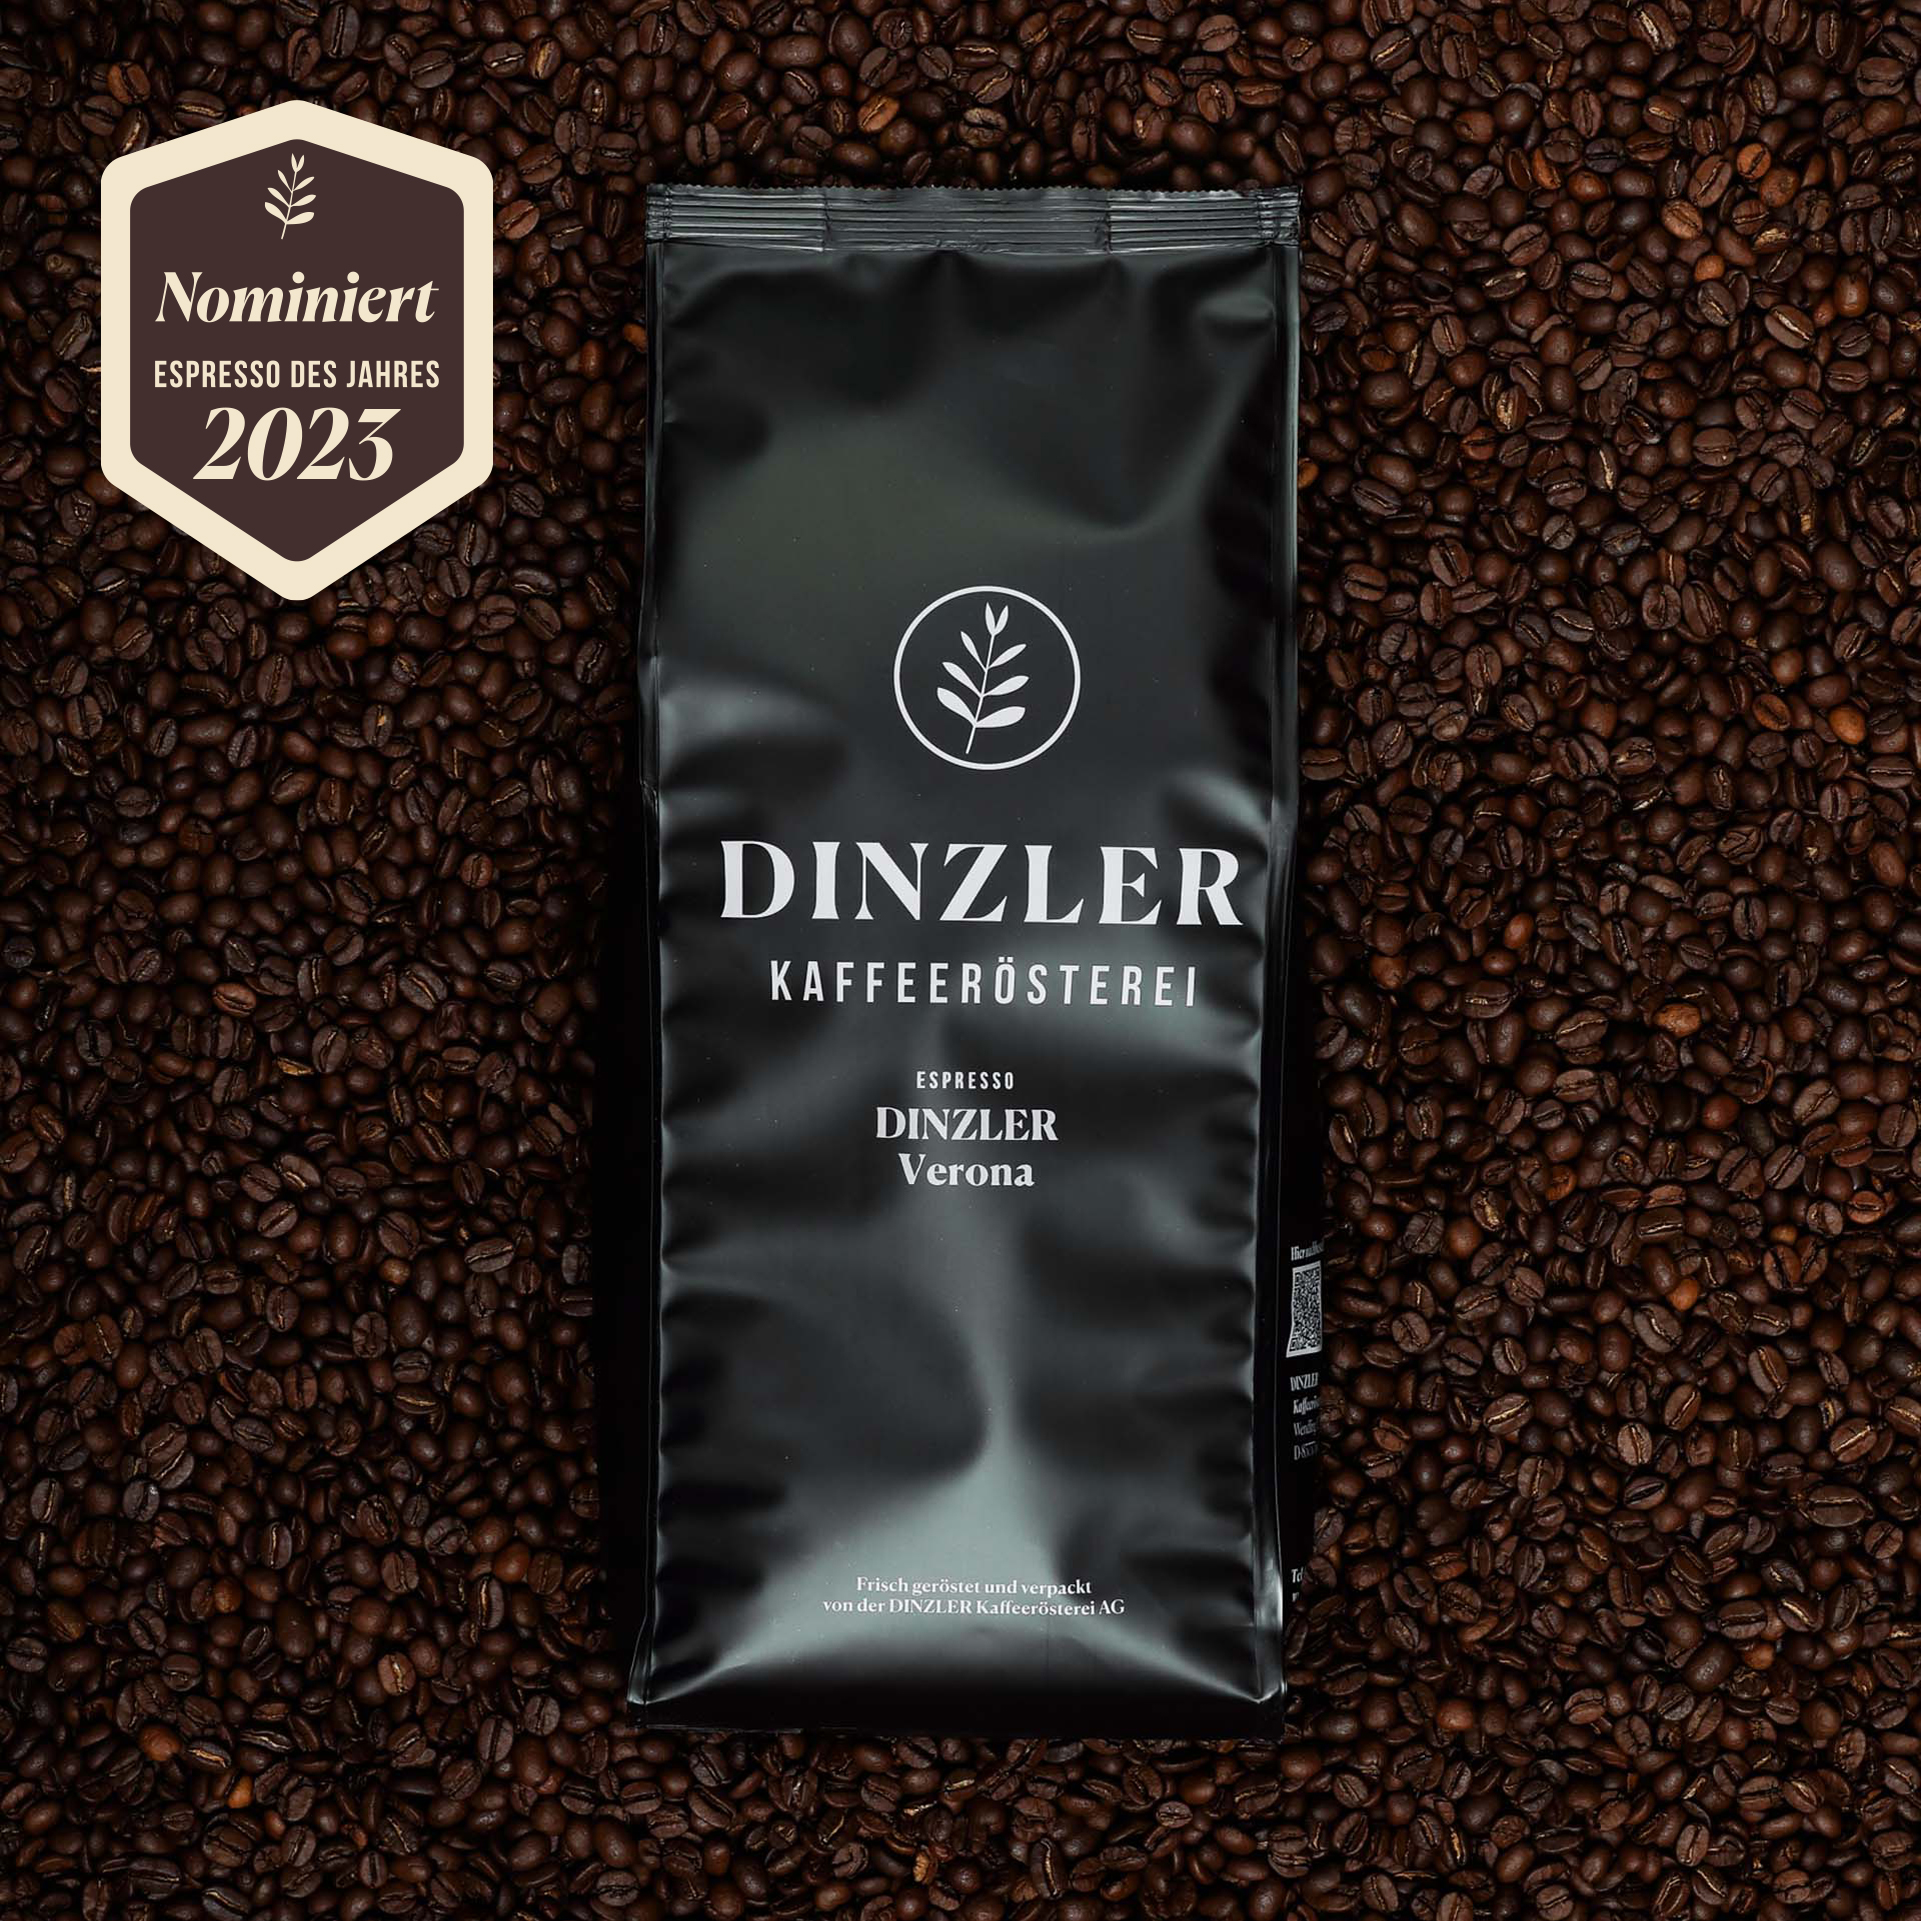 Produktbild Espresso DINZLER Verona| DINZLER Kaffeerösterei